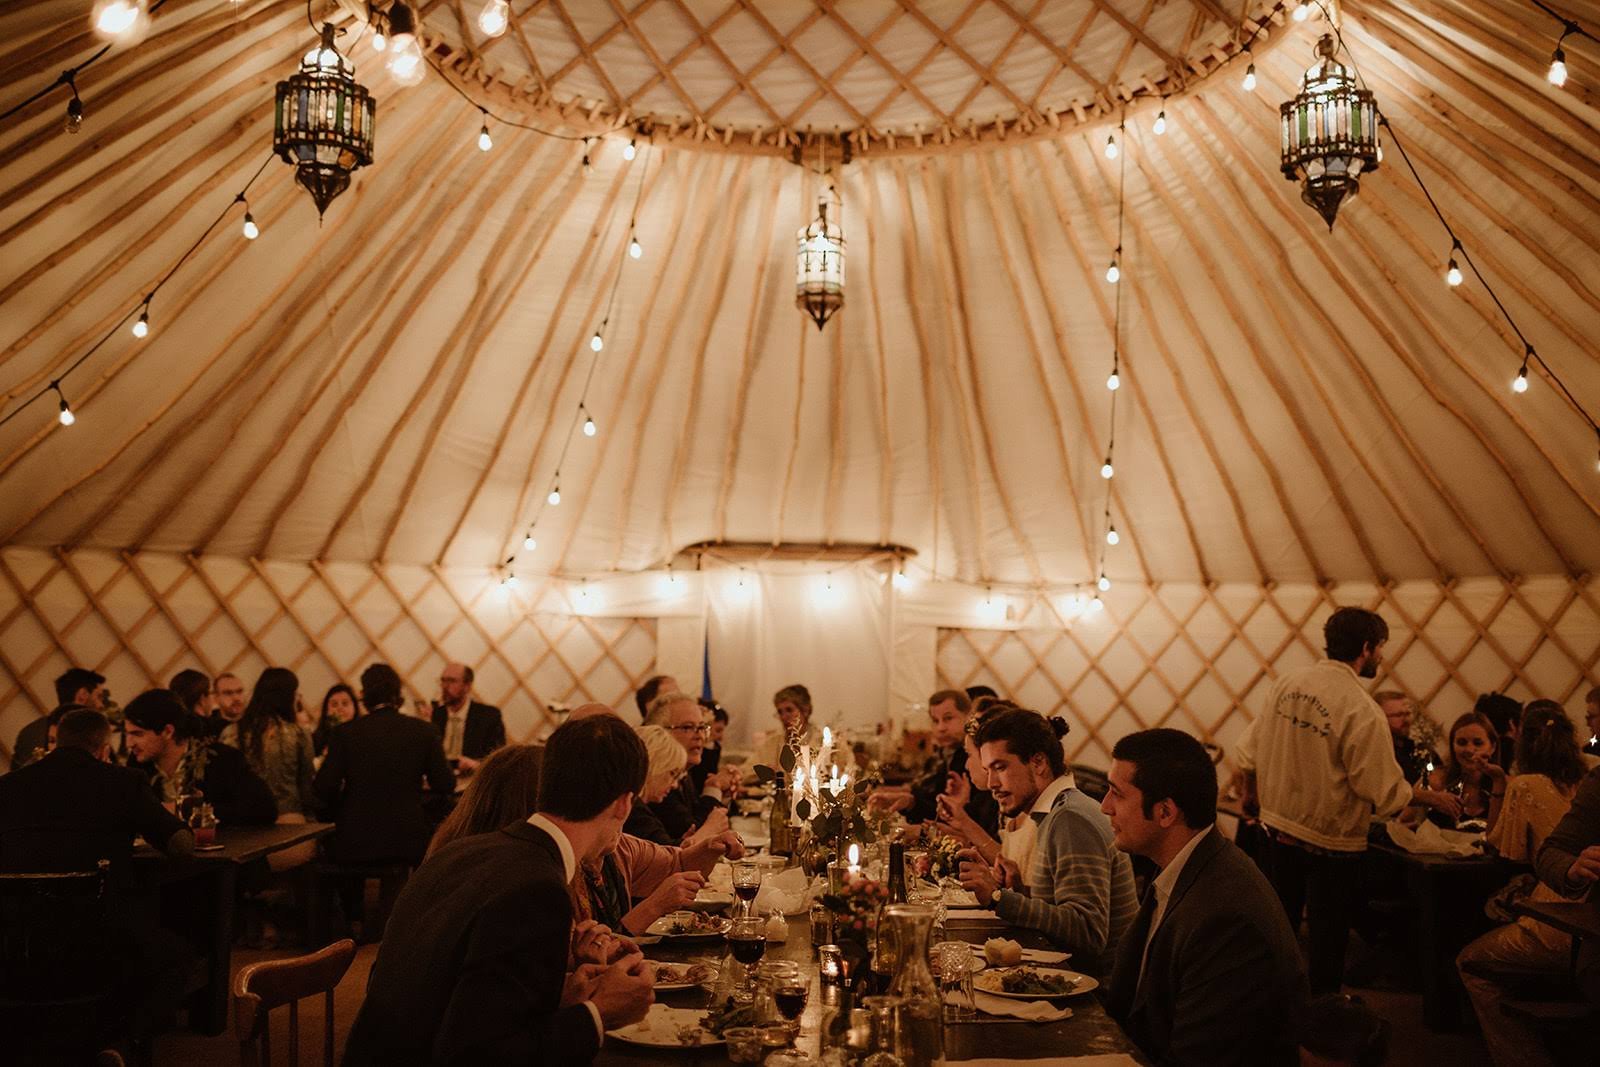 yurt-rental-elegant-wedding-at-night.jpg